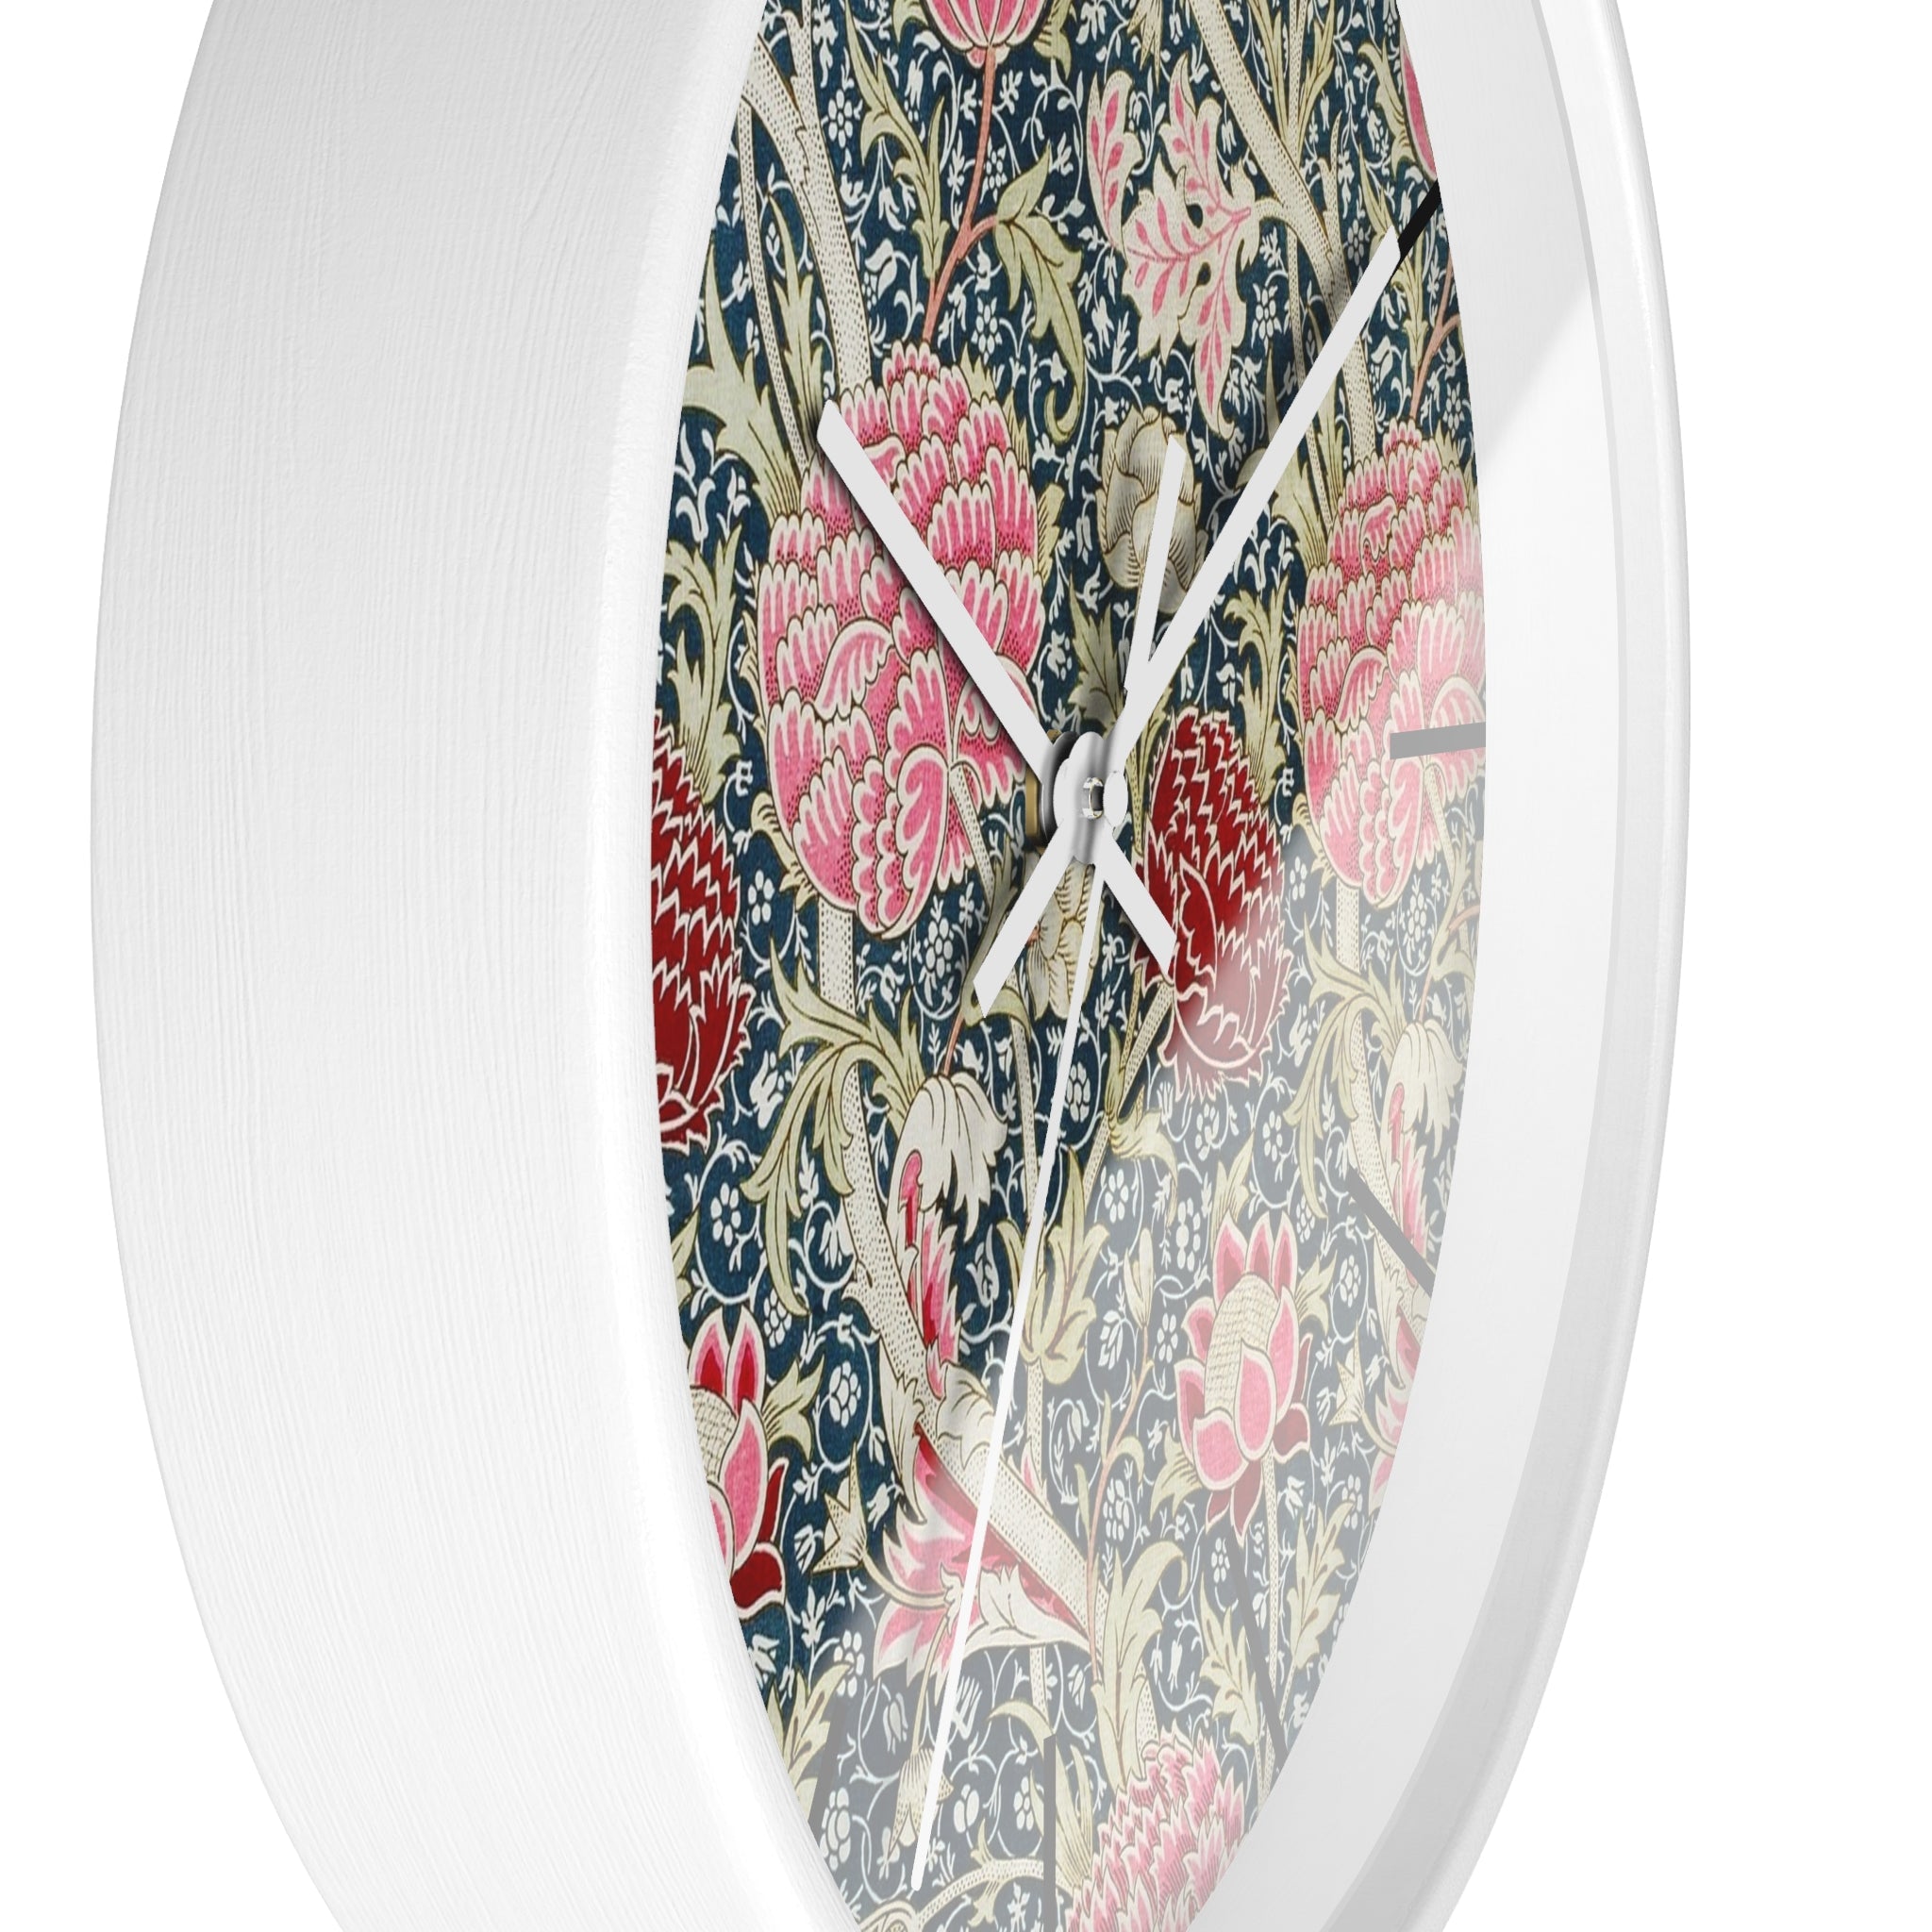 Custom Masters of Art William Morris Cray Premium Wall Clock - POPvault